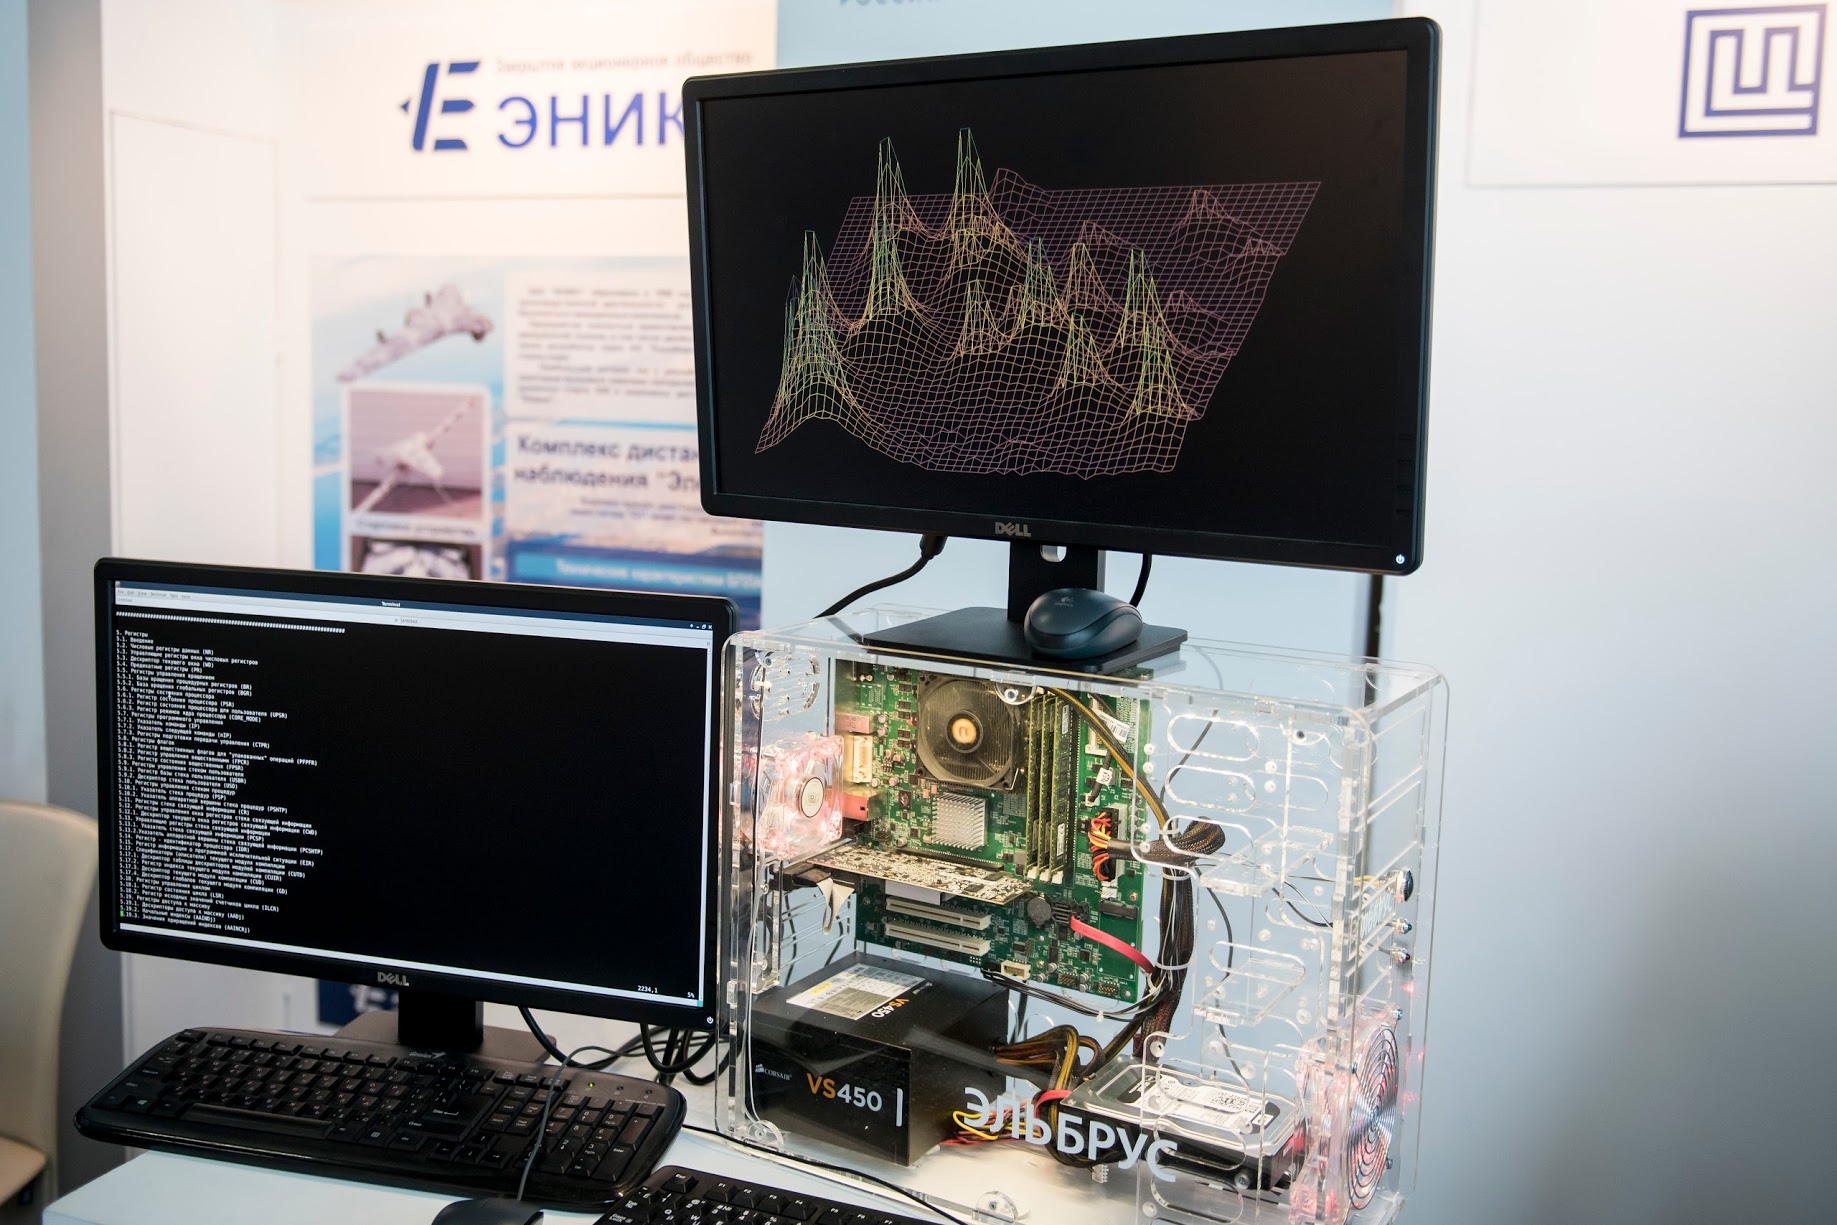 Ростех создает ПО для массового внедрения компьютеров «Эльбрус» в России